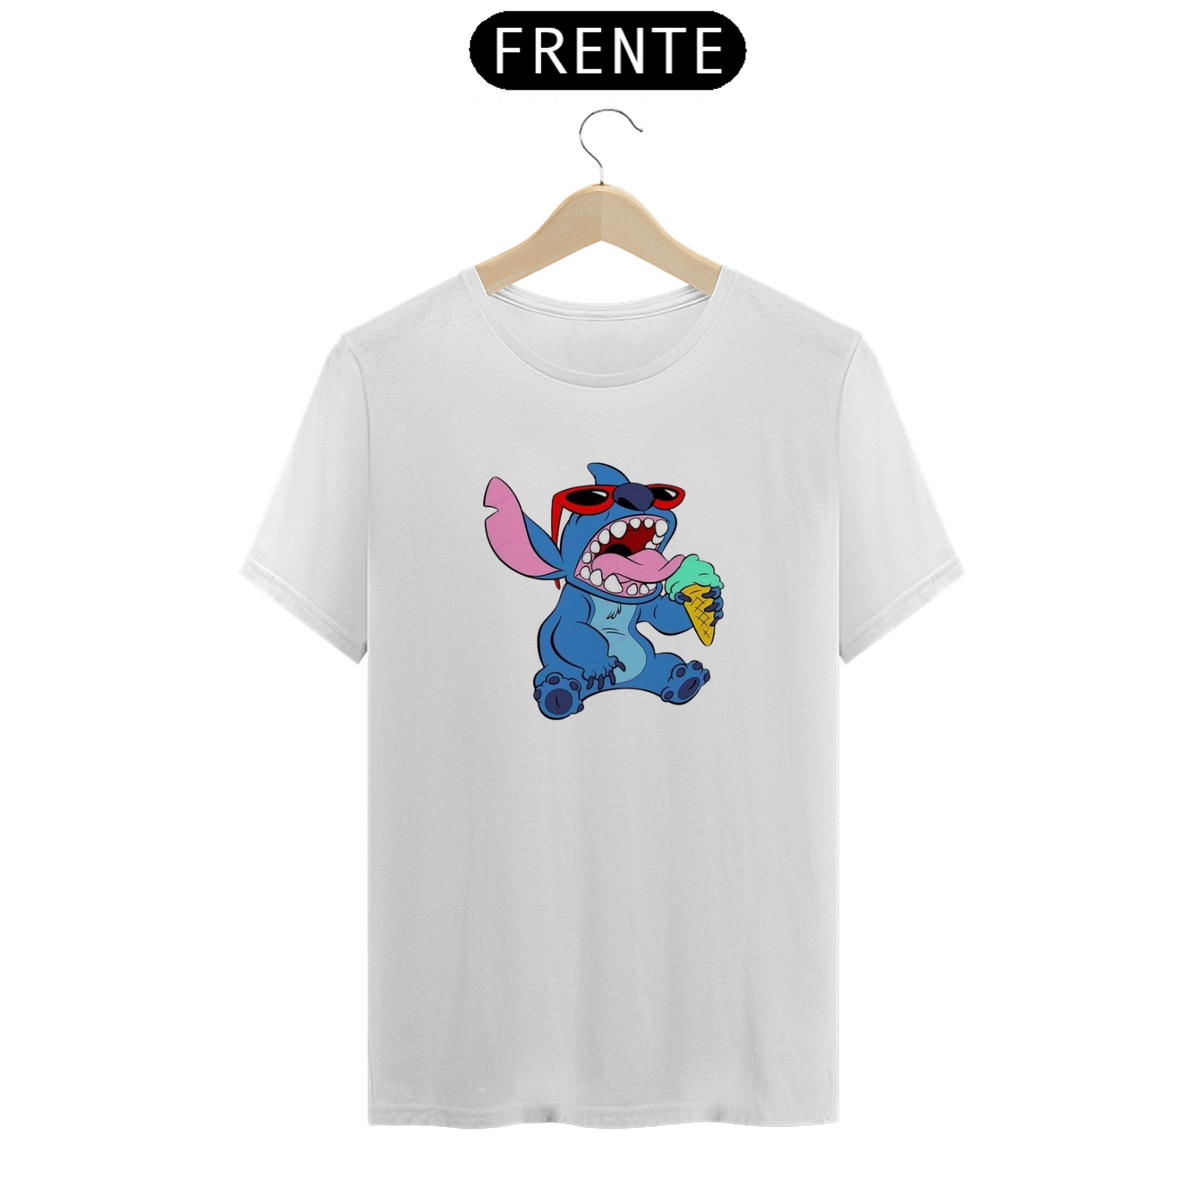 Nome do produto: Camiseta Classica Stitch - Sorvete